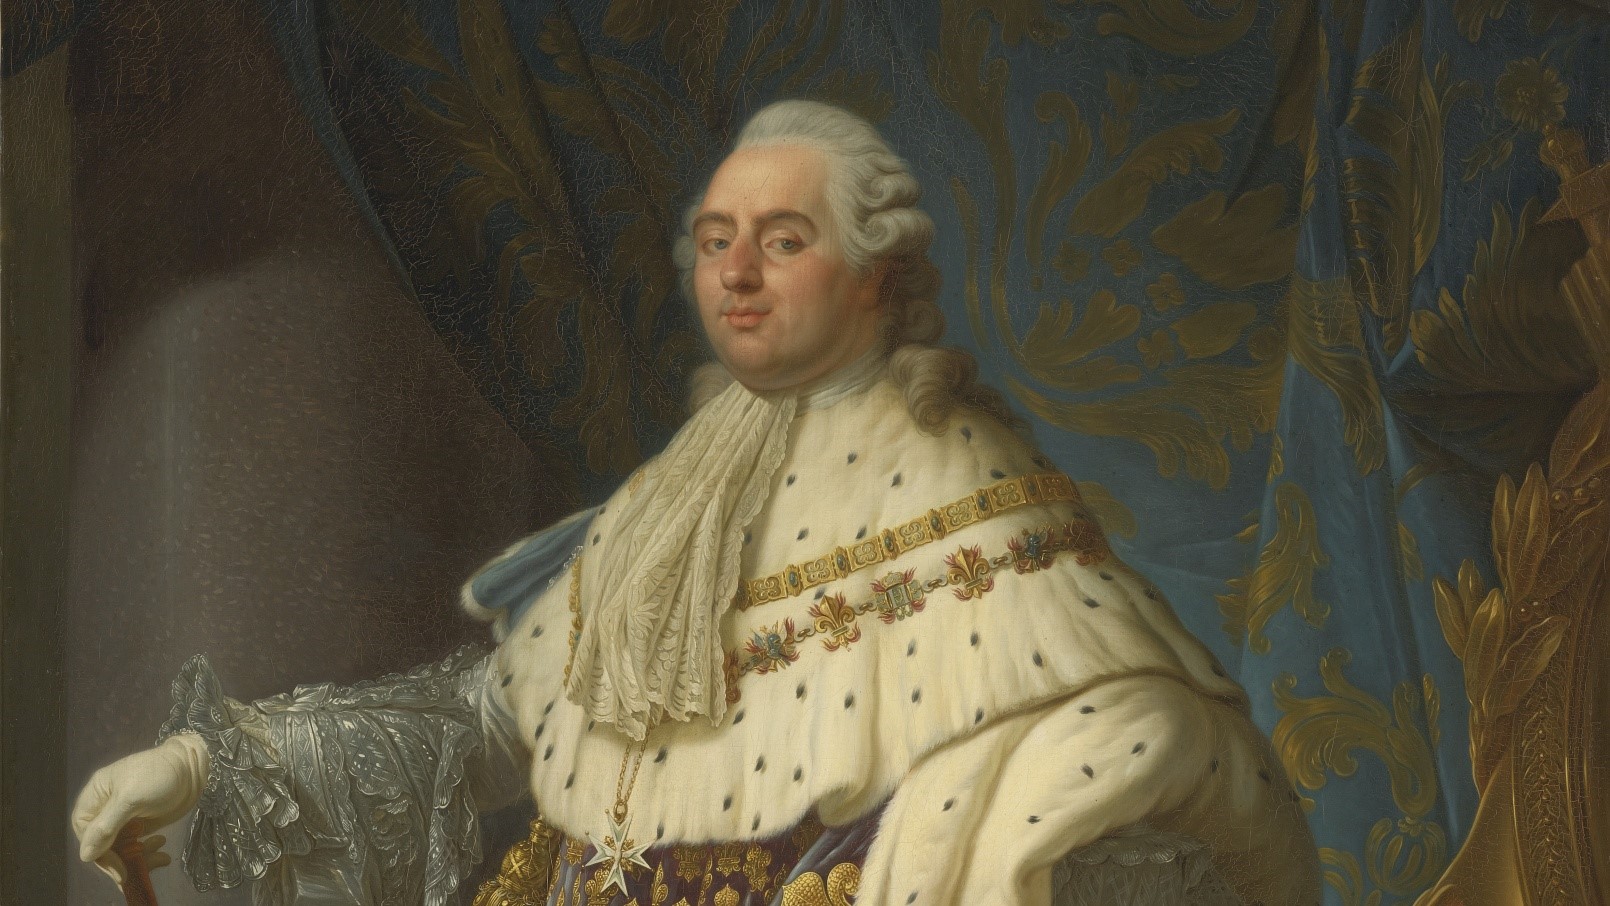 Le Sacre - Portrait of King Louis XVI in Coronation Regalia,  Charles-Clément Bervic; Artist: after Antoine-François Callet; Publisher:  Chez Bervic